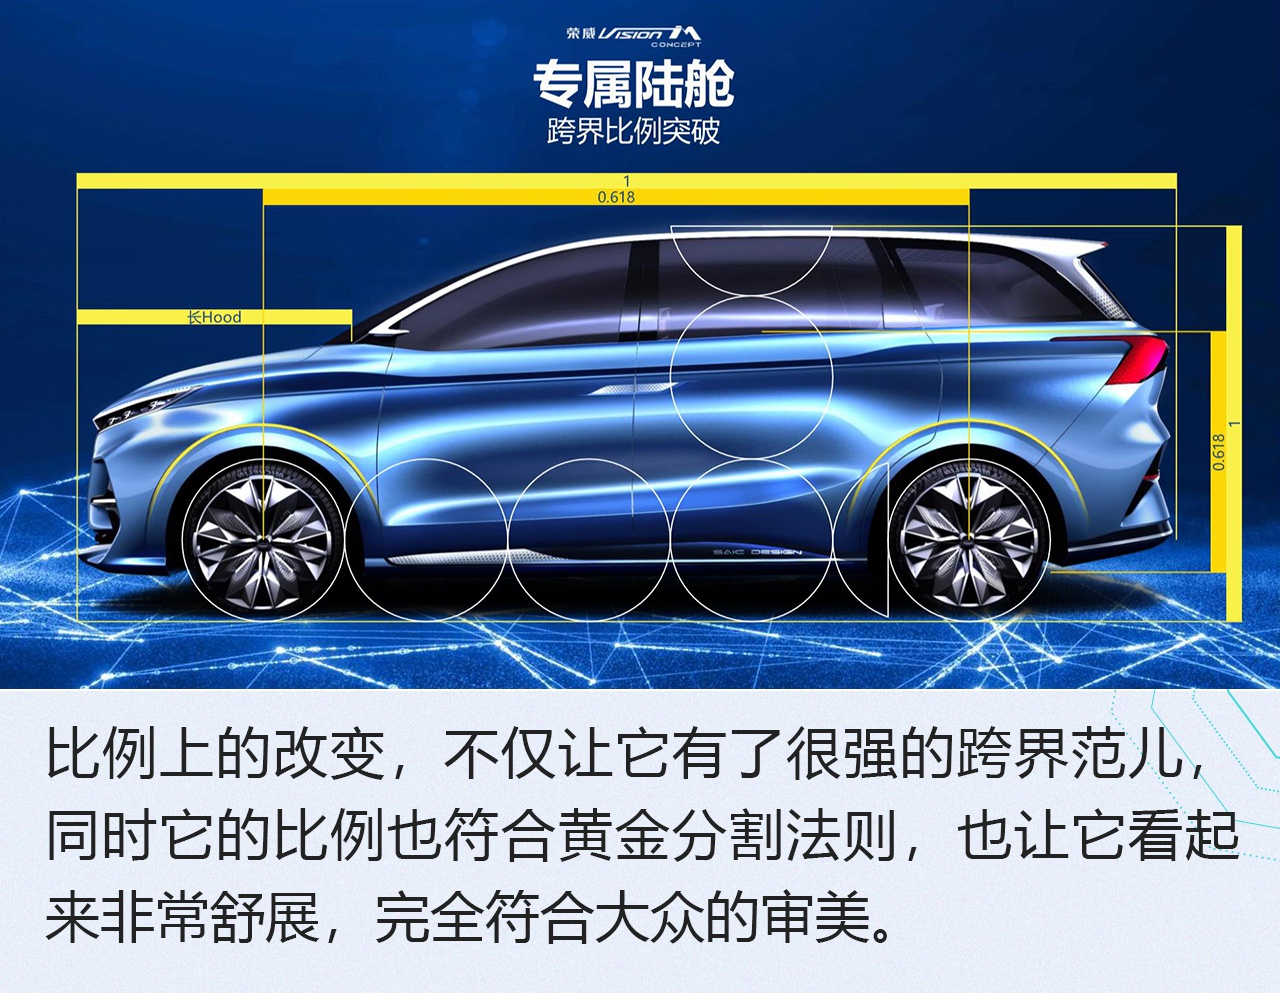 2019广州车展：荣威Vision-iM概念车设计解析